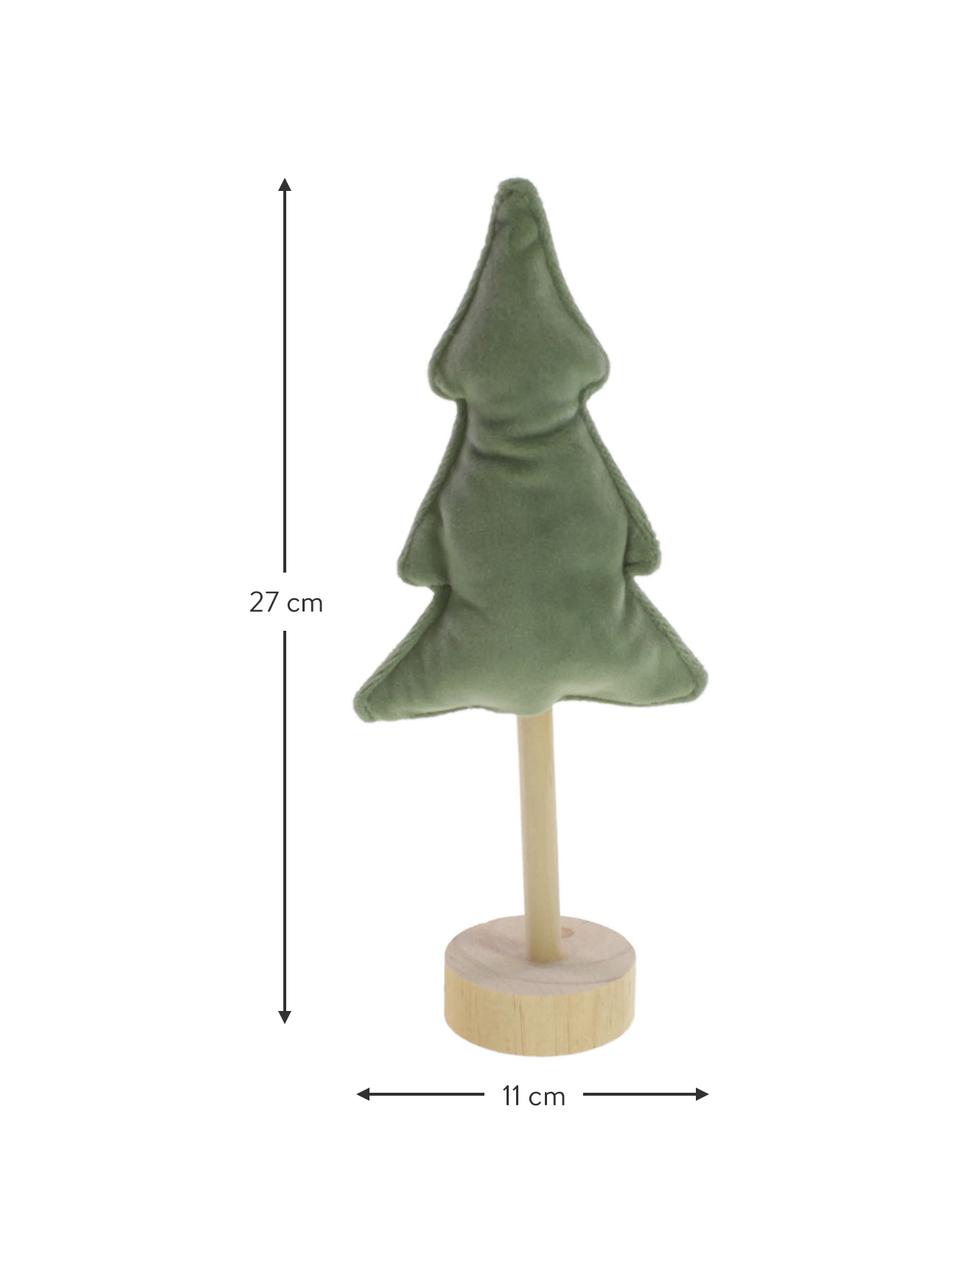 Samt-Deko-Baum Mikka in Grün H 27 cm, Holz, Polyestersamt, Grün, Beige, B 11 x H 27 cm